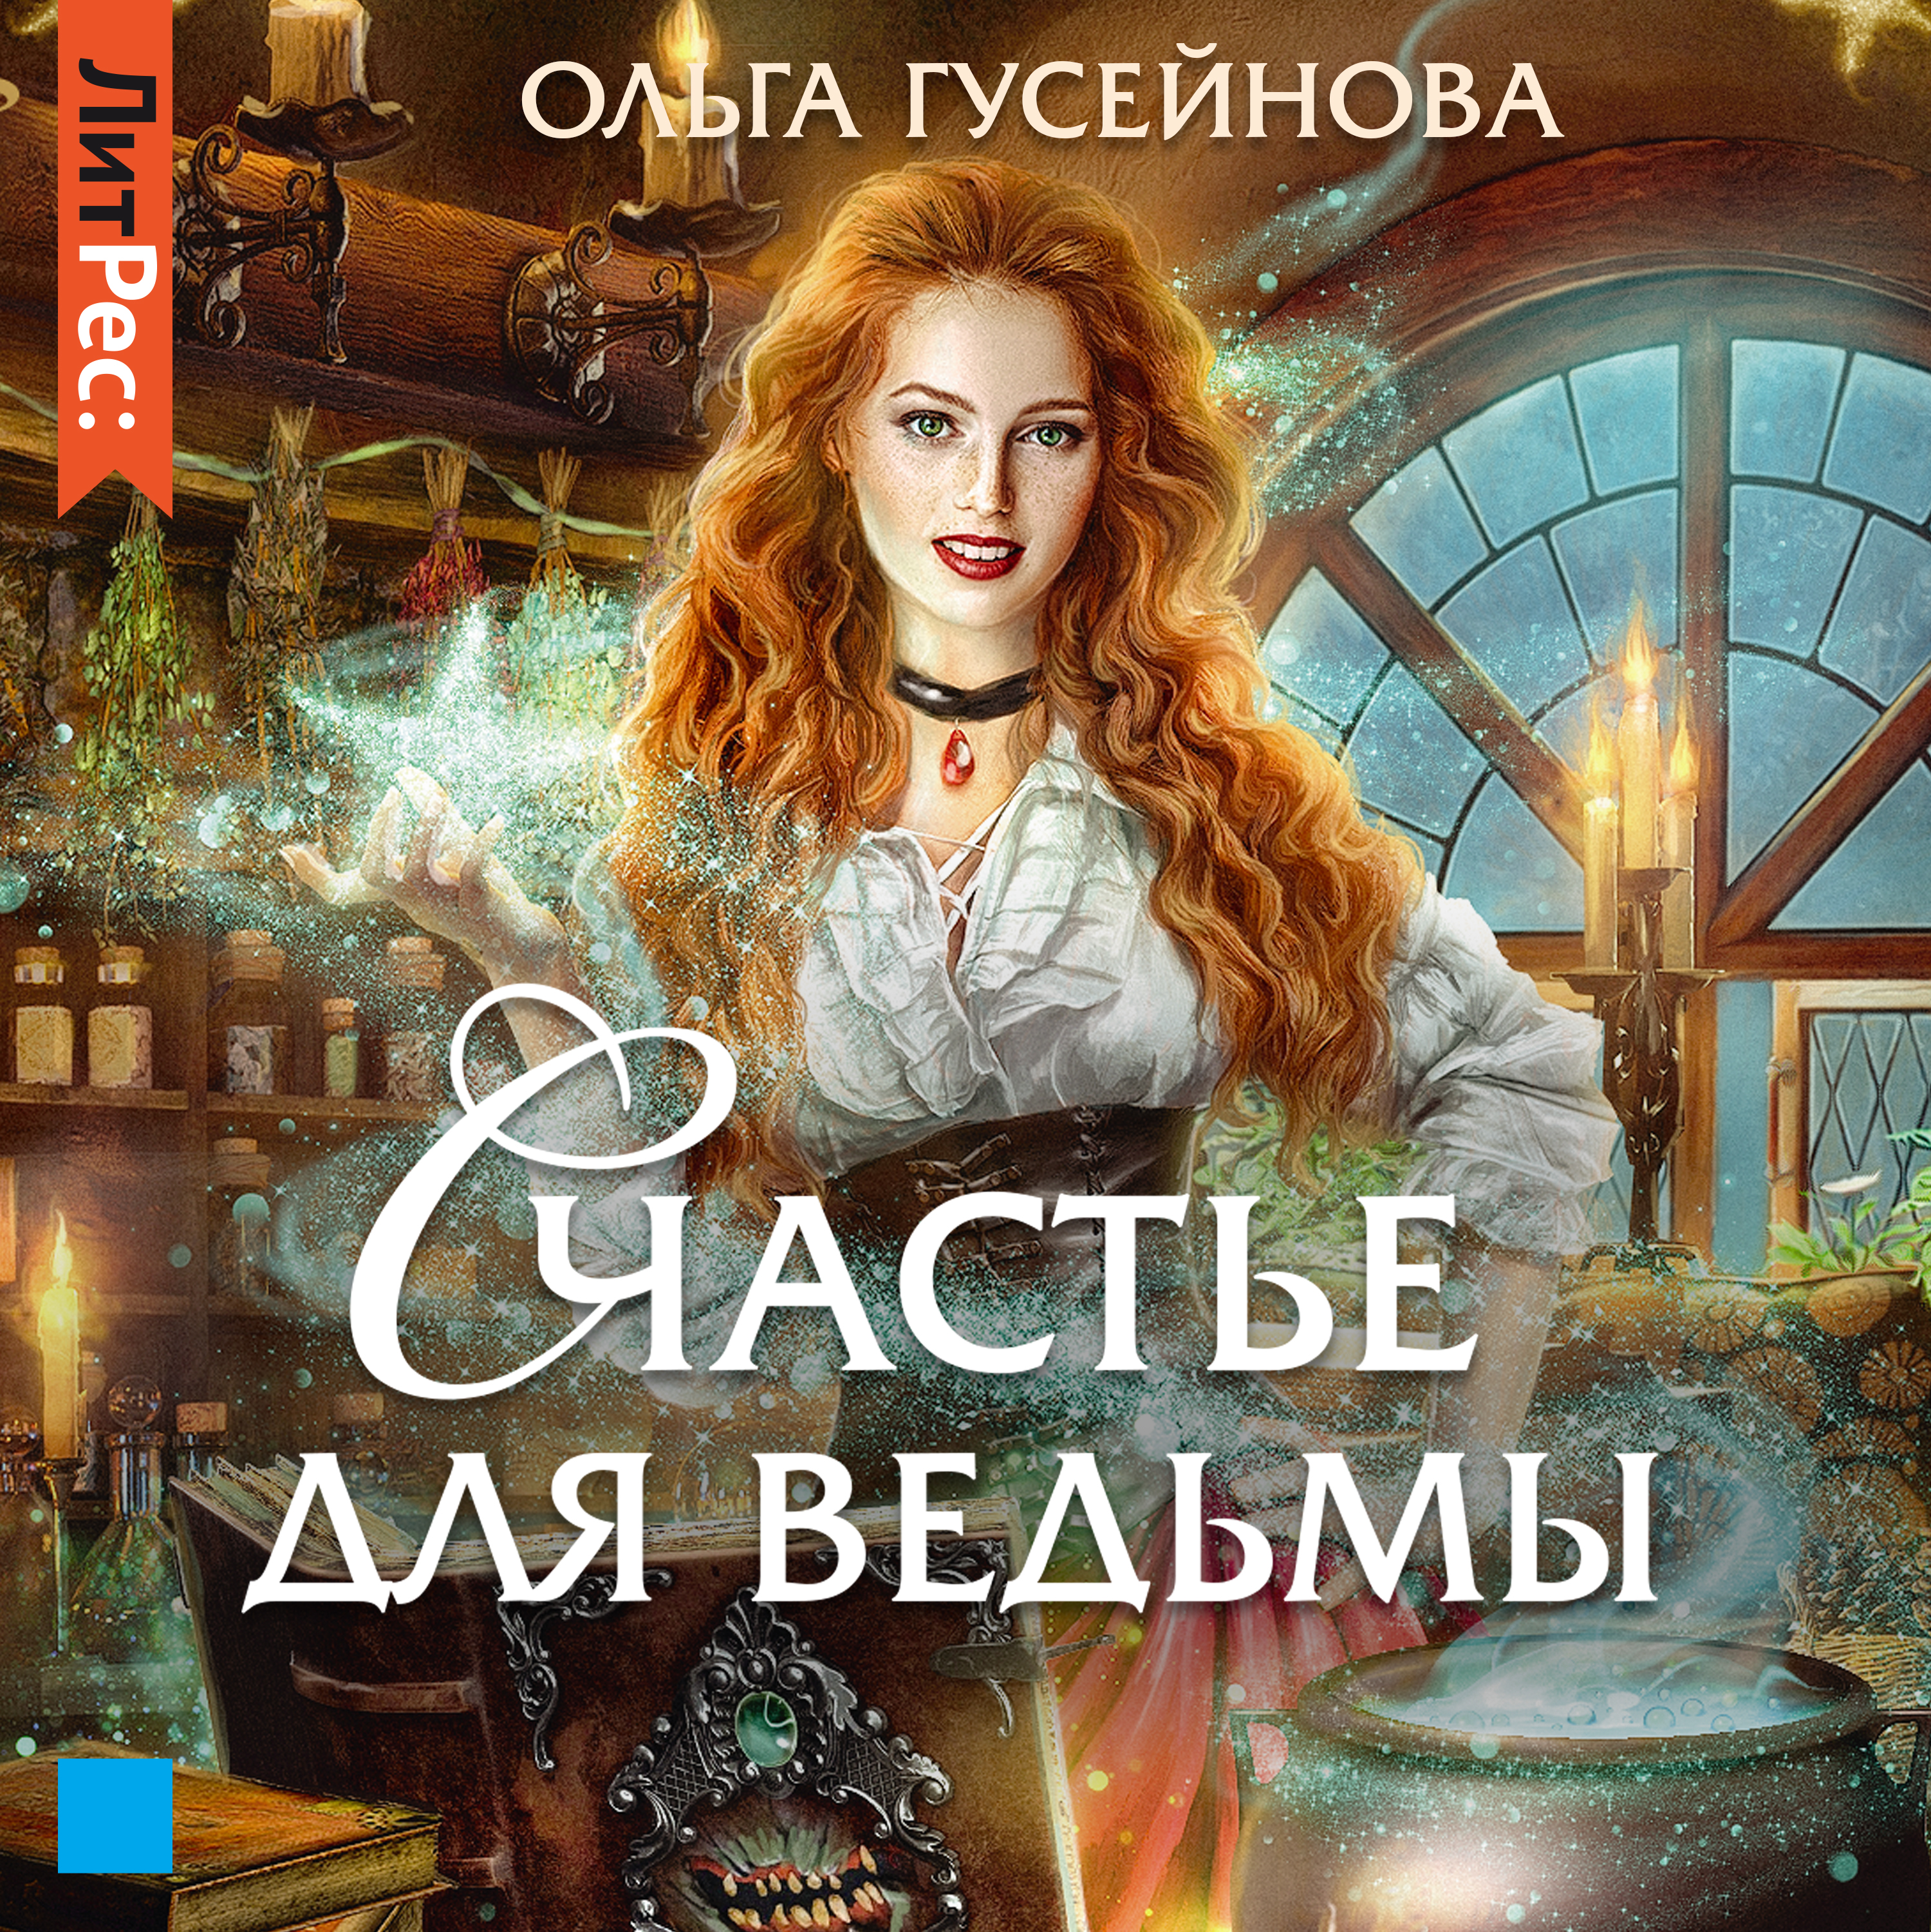 Счастье для ведьмы, Ольга Гусейнова – слушать онлайн или скачать mp3 на  ЛитРес